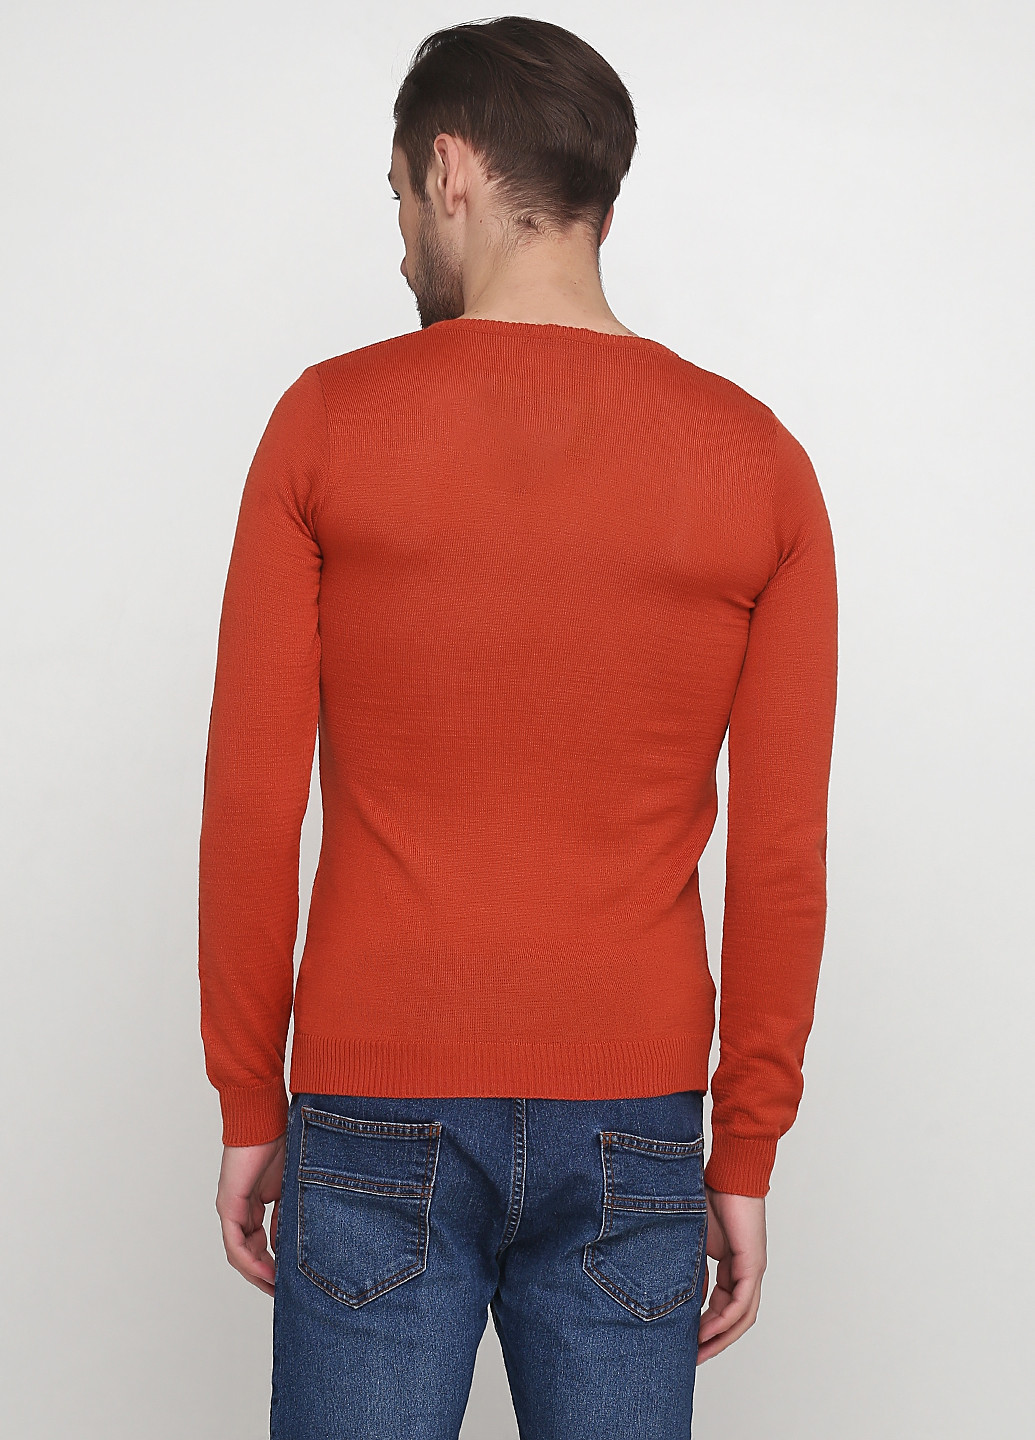 Терракотовый демисезонный пуловер пуловер Xagon Man